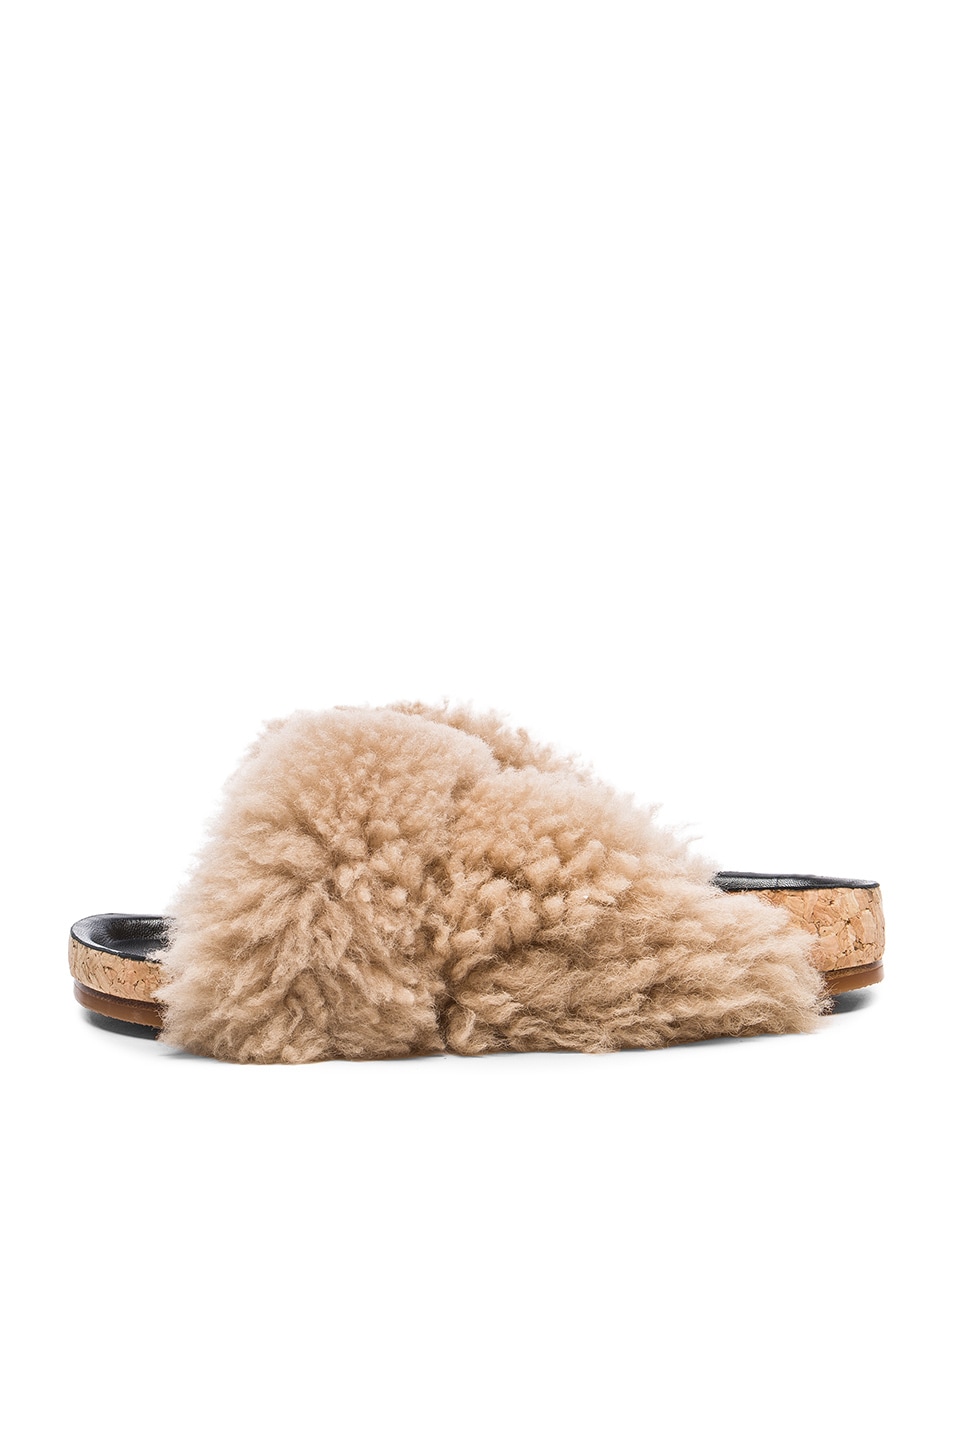 Chloe Kerenn Shearling Fur Sandals in Fawn | FWRD